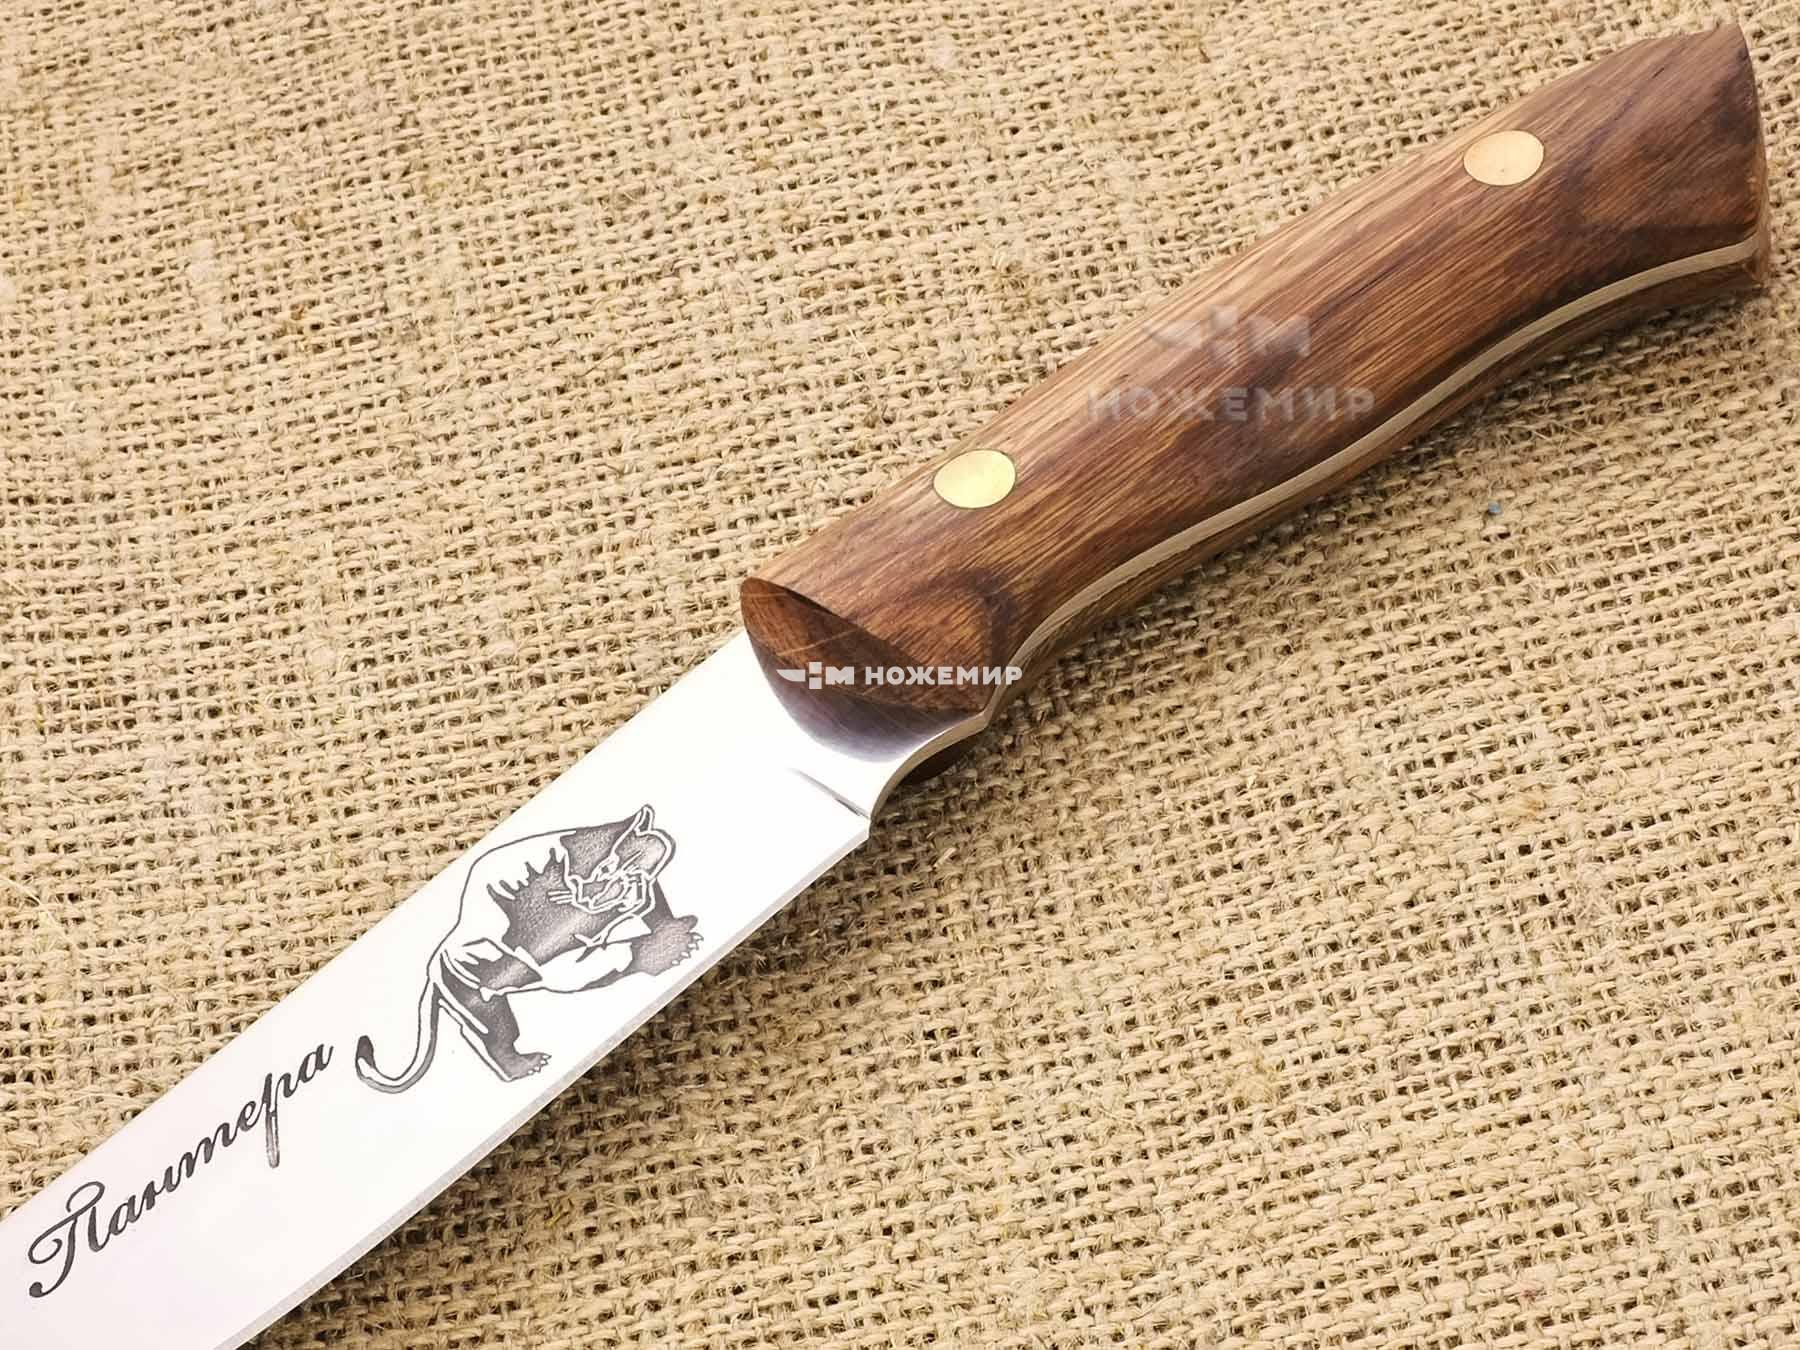 Нож туристический цельнометаллический Кизляр ПАНТЕРА2-ЦМ (6622) с кожаными ножнами